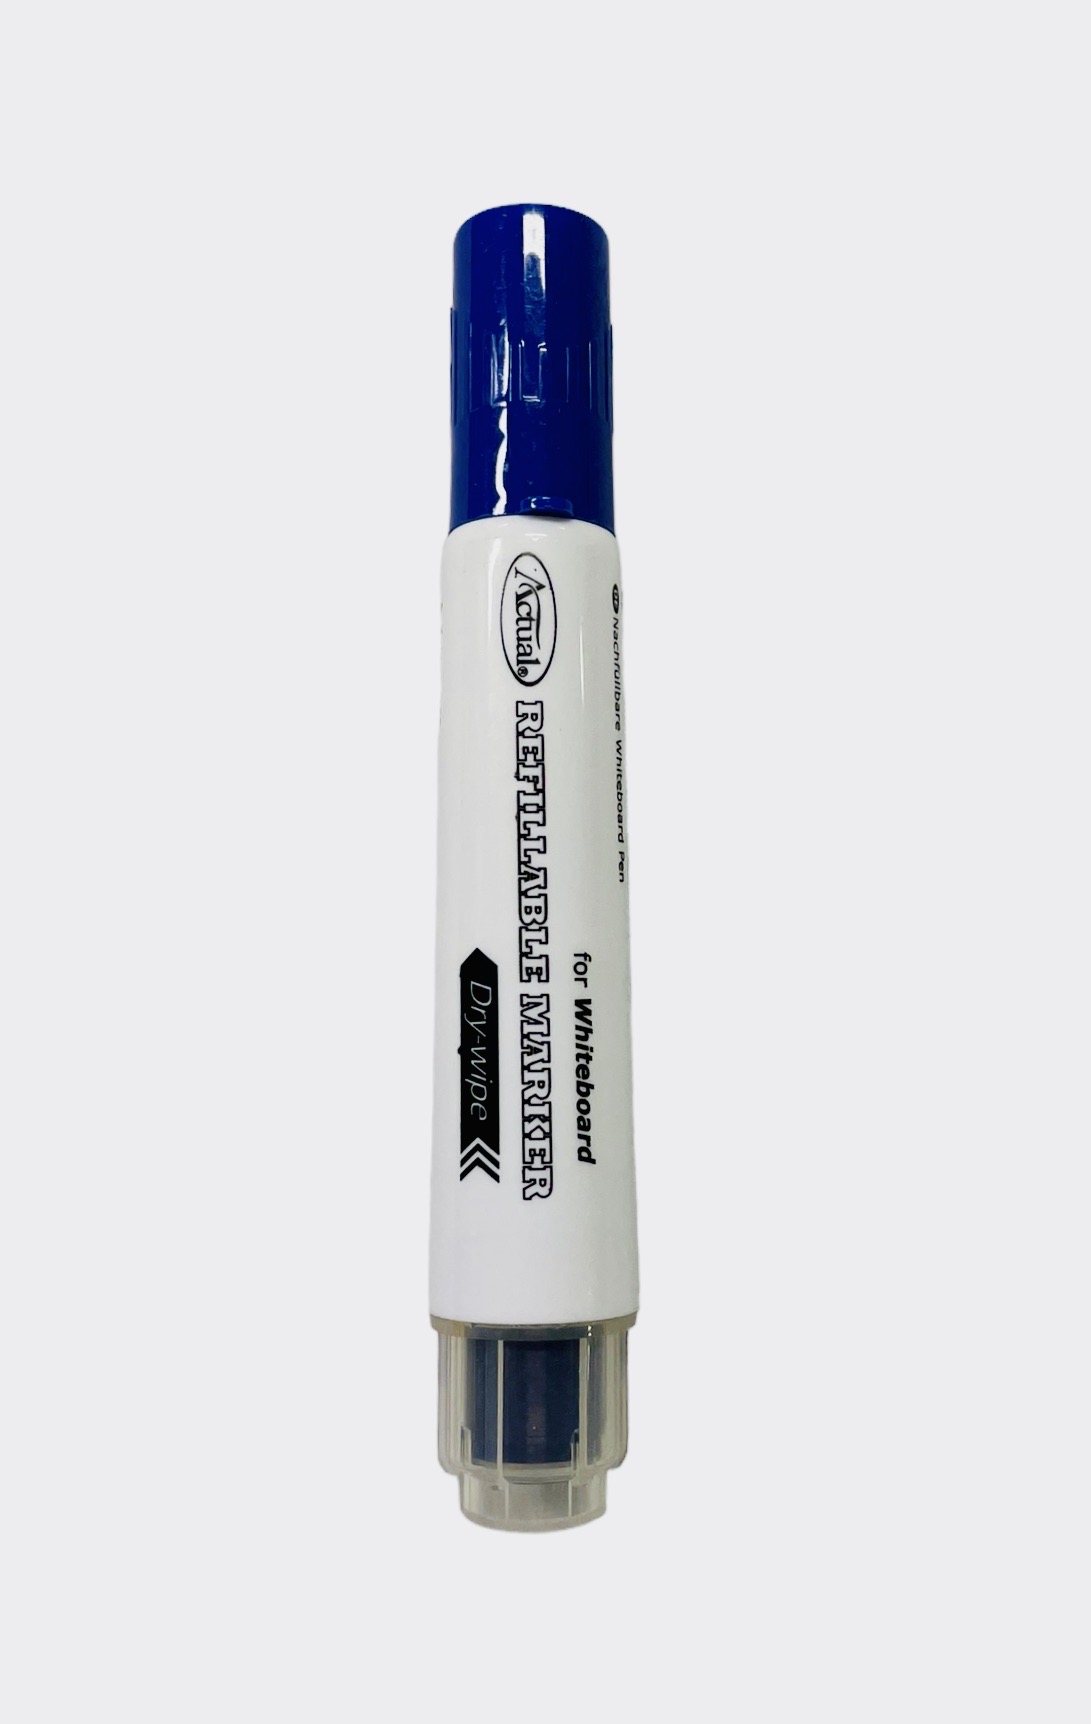 Whiteboardpenna blå som kan återfyllas med ny färgpatron, spetsen är 1-3 mm Från Actual.